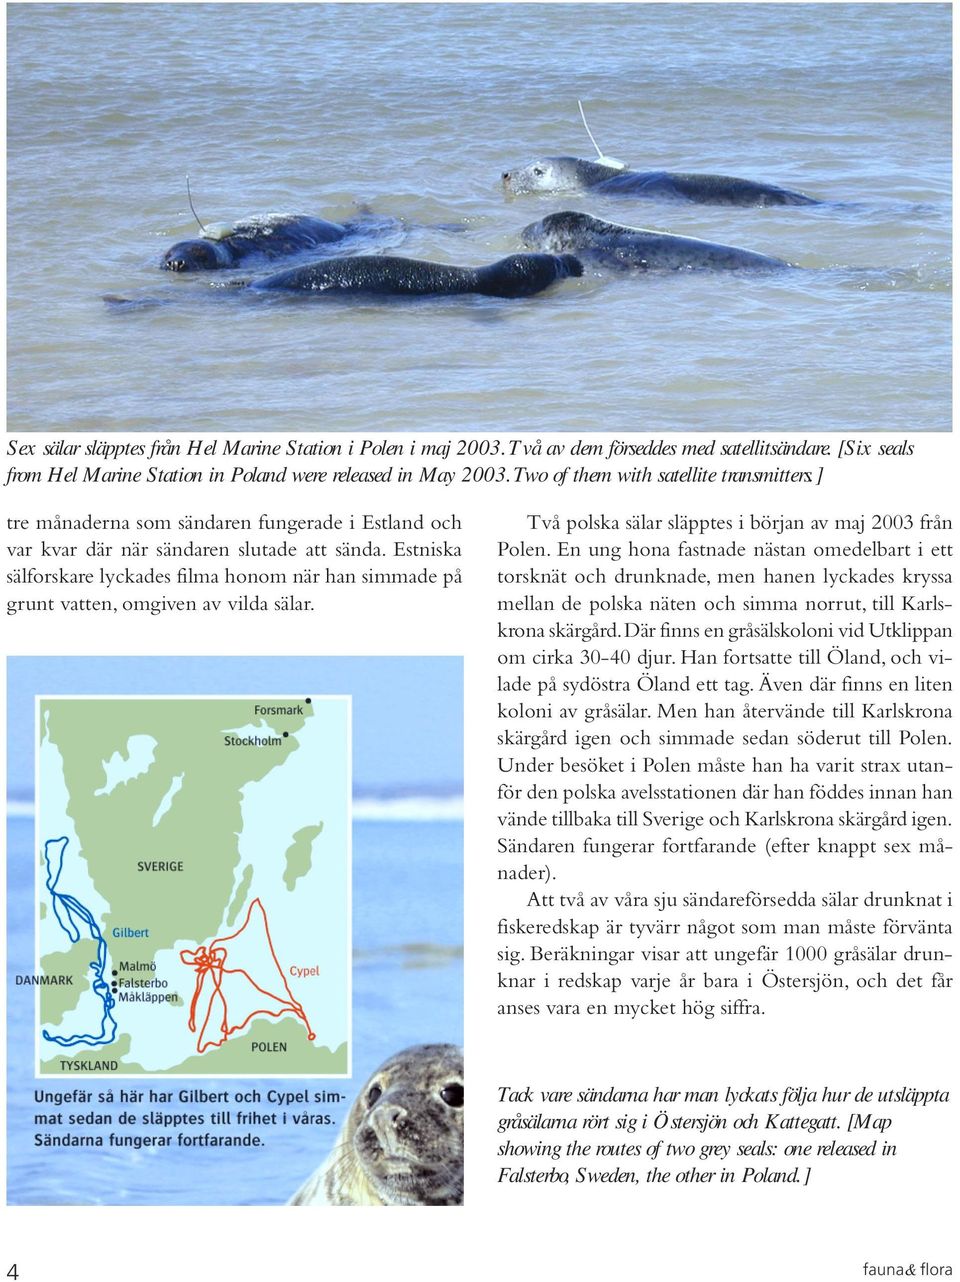 Estniska sälforskare lyckades filma honom när han simmade på grunt vatten, omgiven av vilda sälar. Två polska sälar släpptes i början av maj 2003 från Polen.